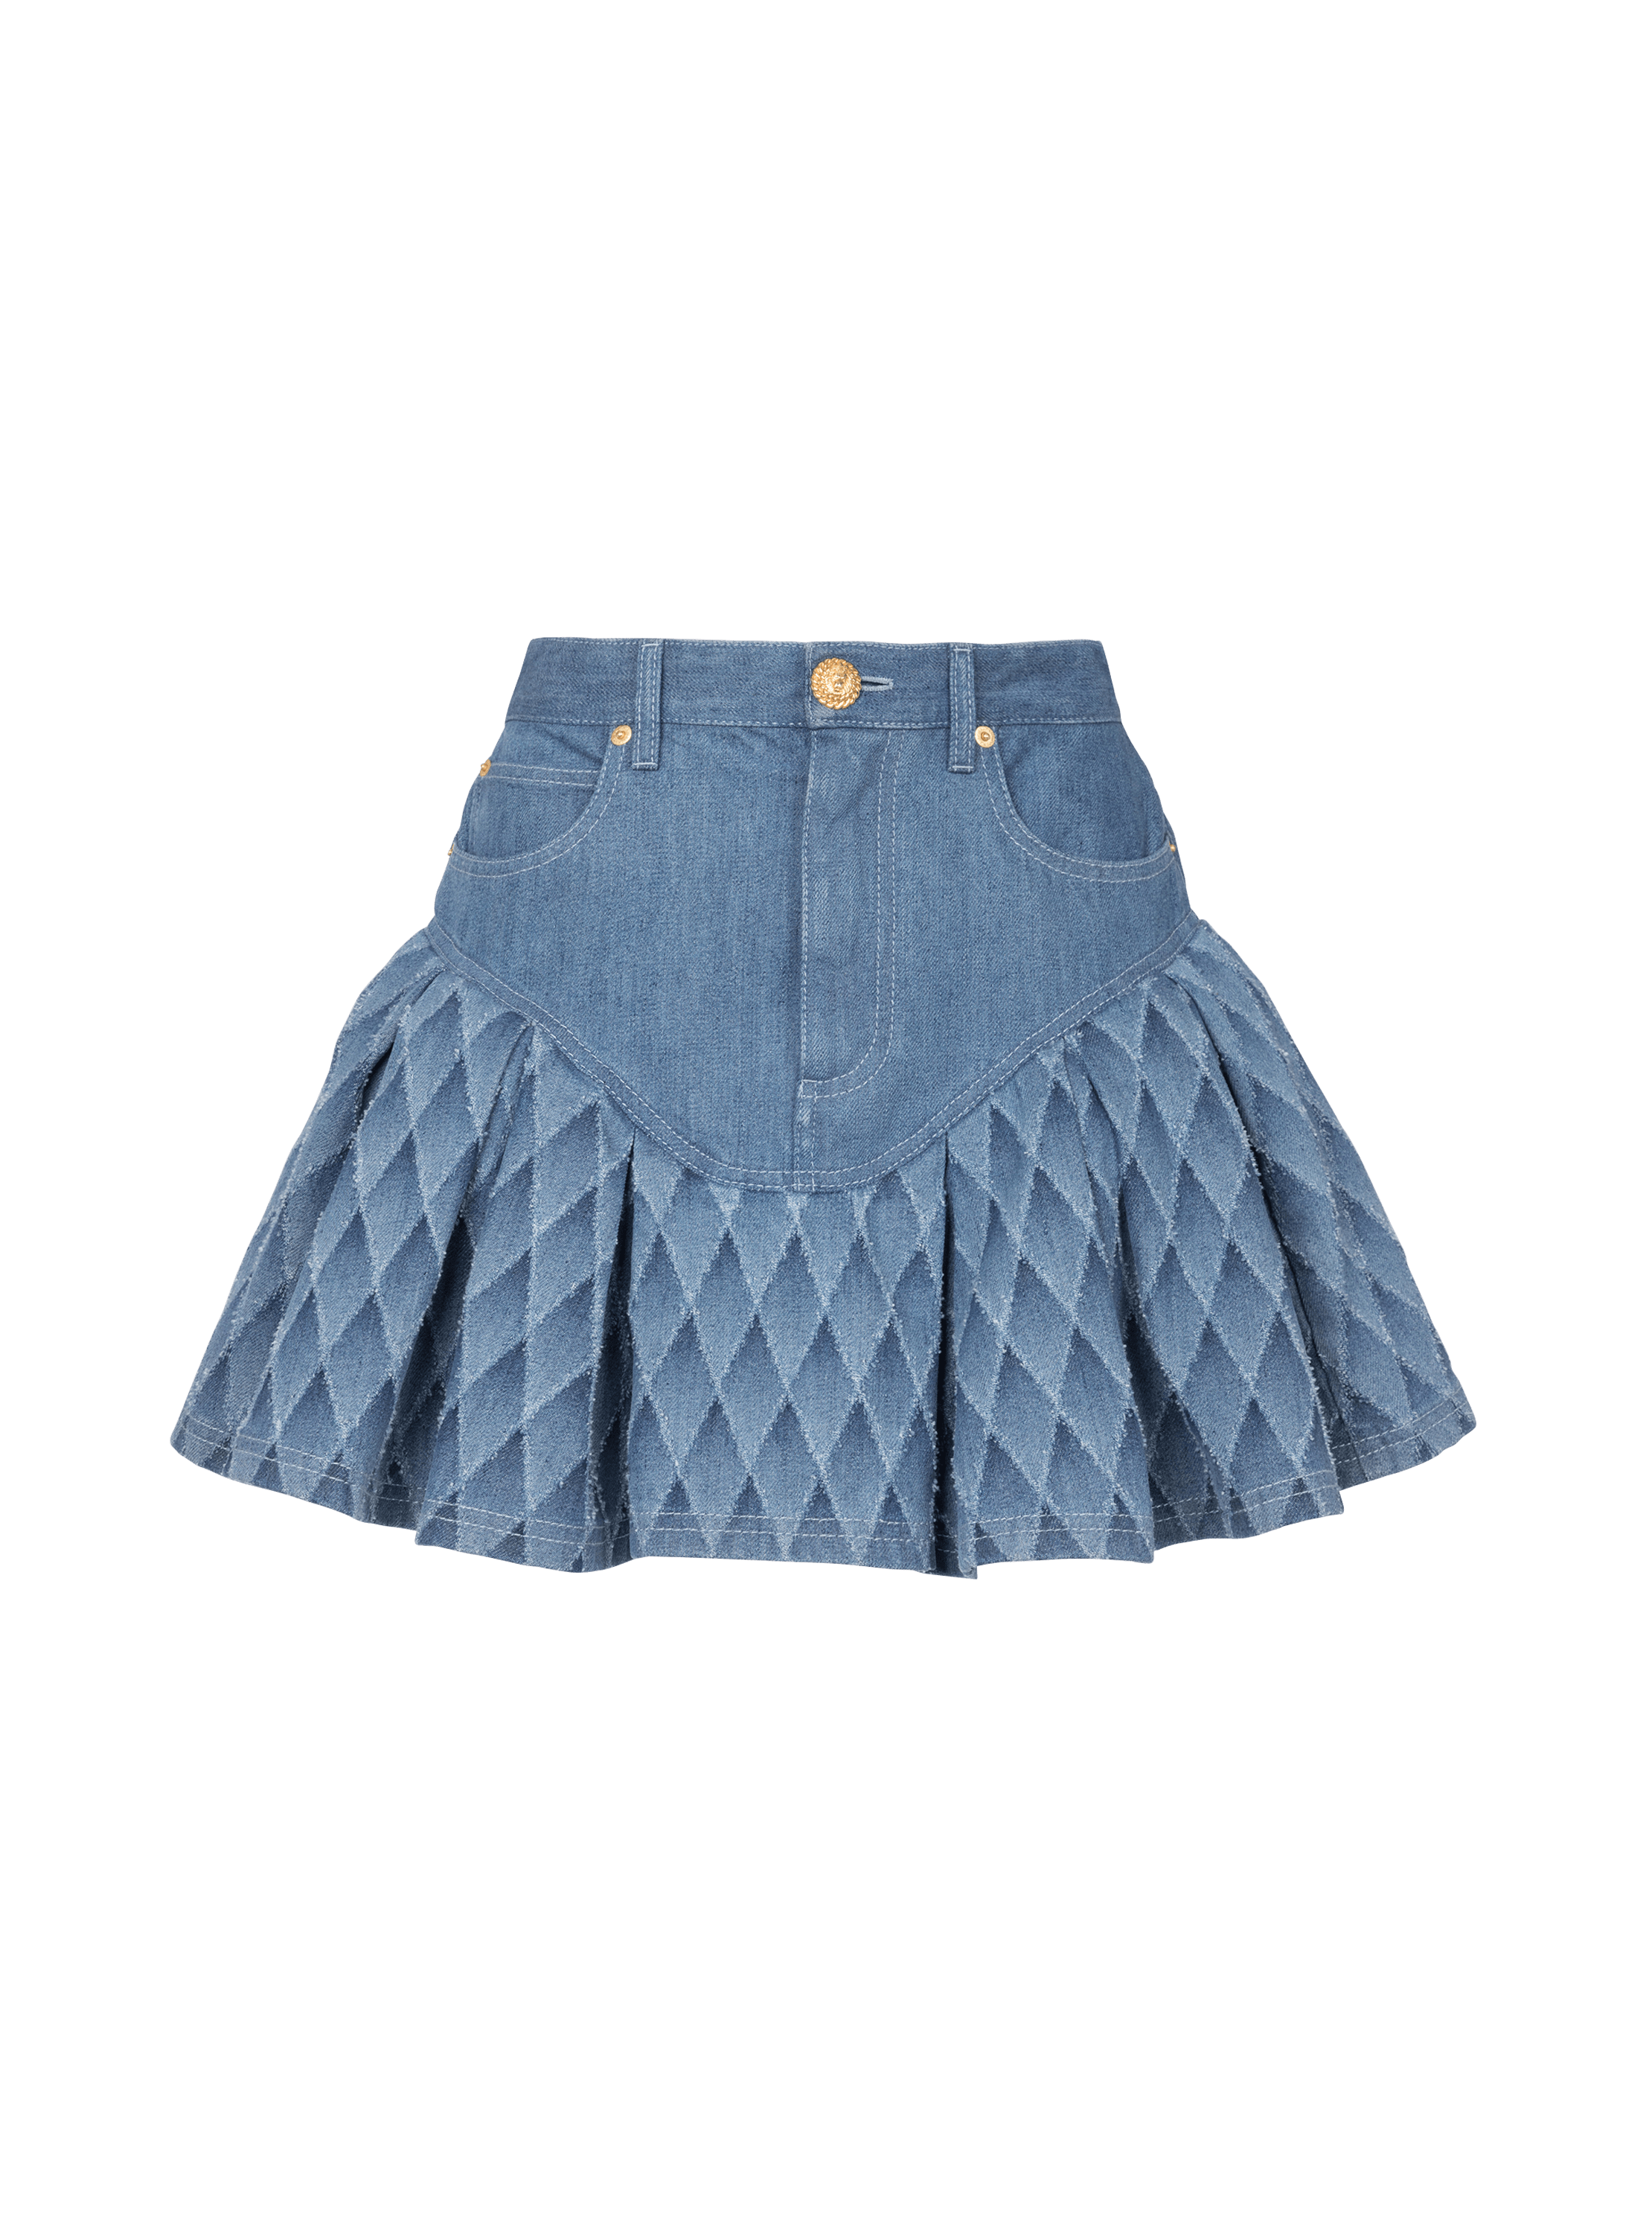 Short skirt in laser-cut denim